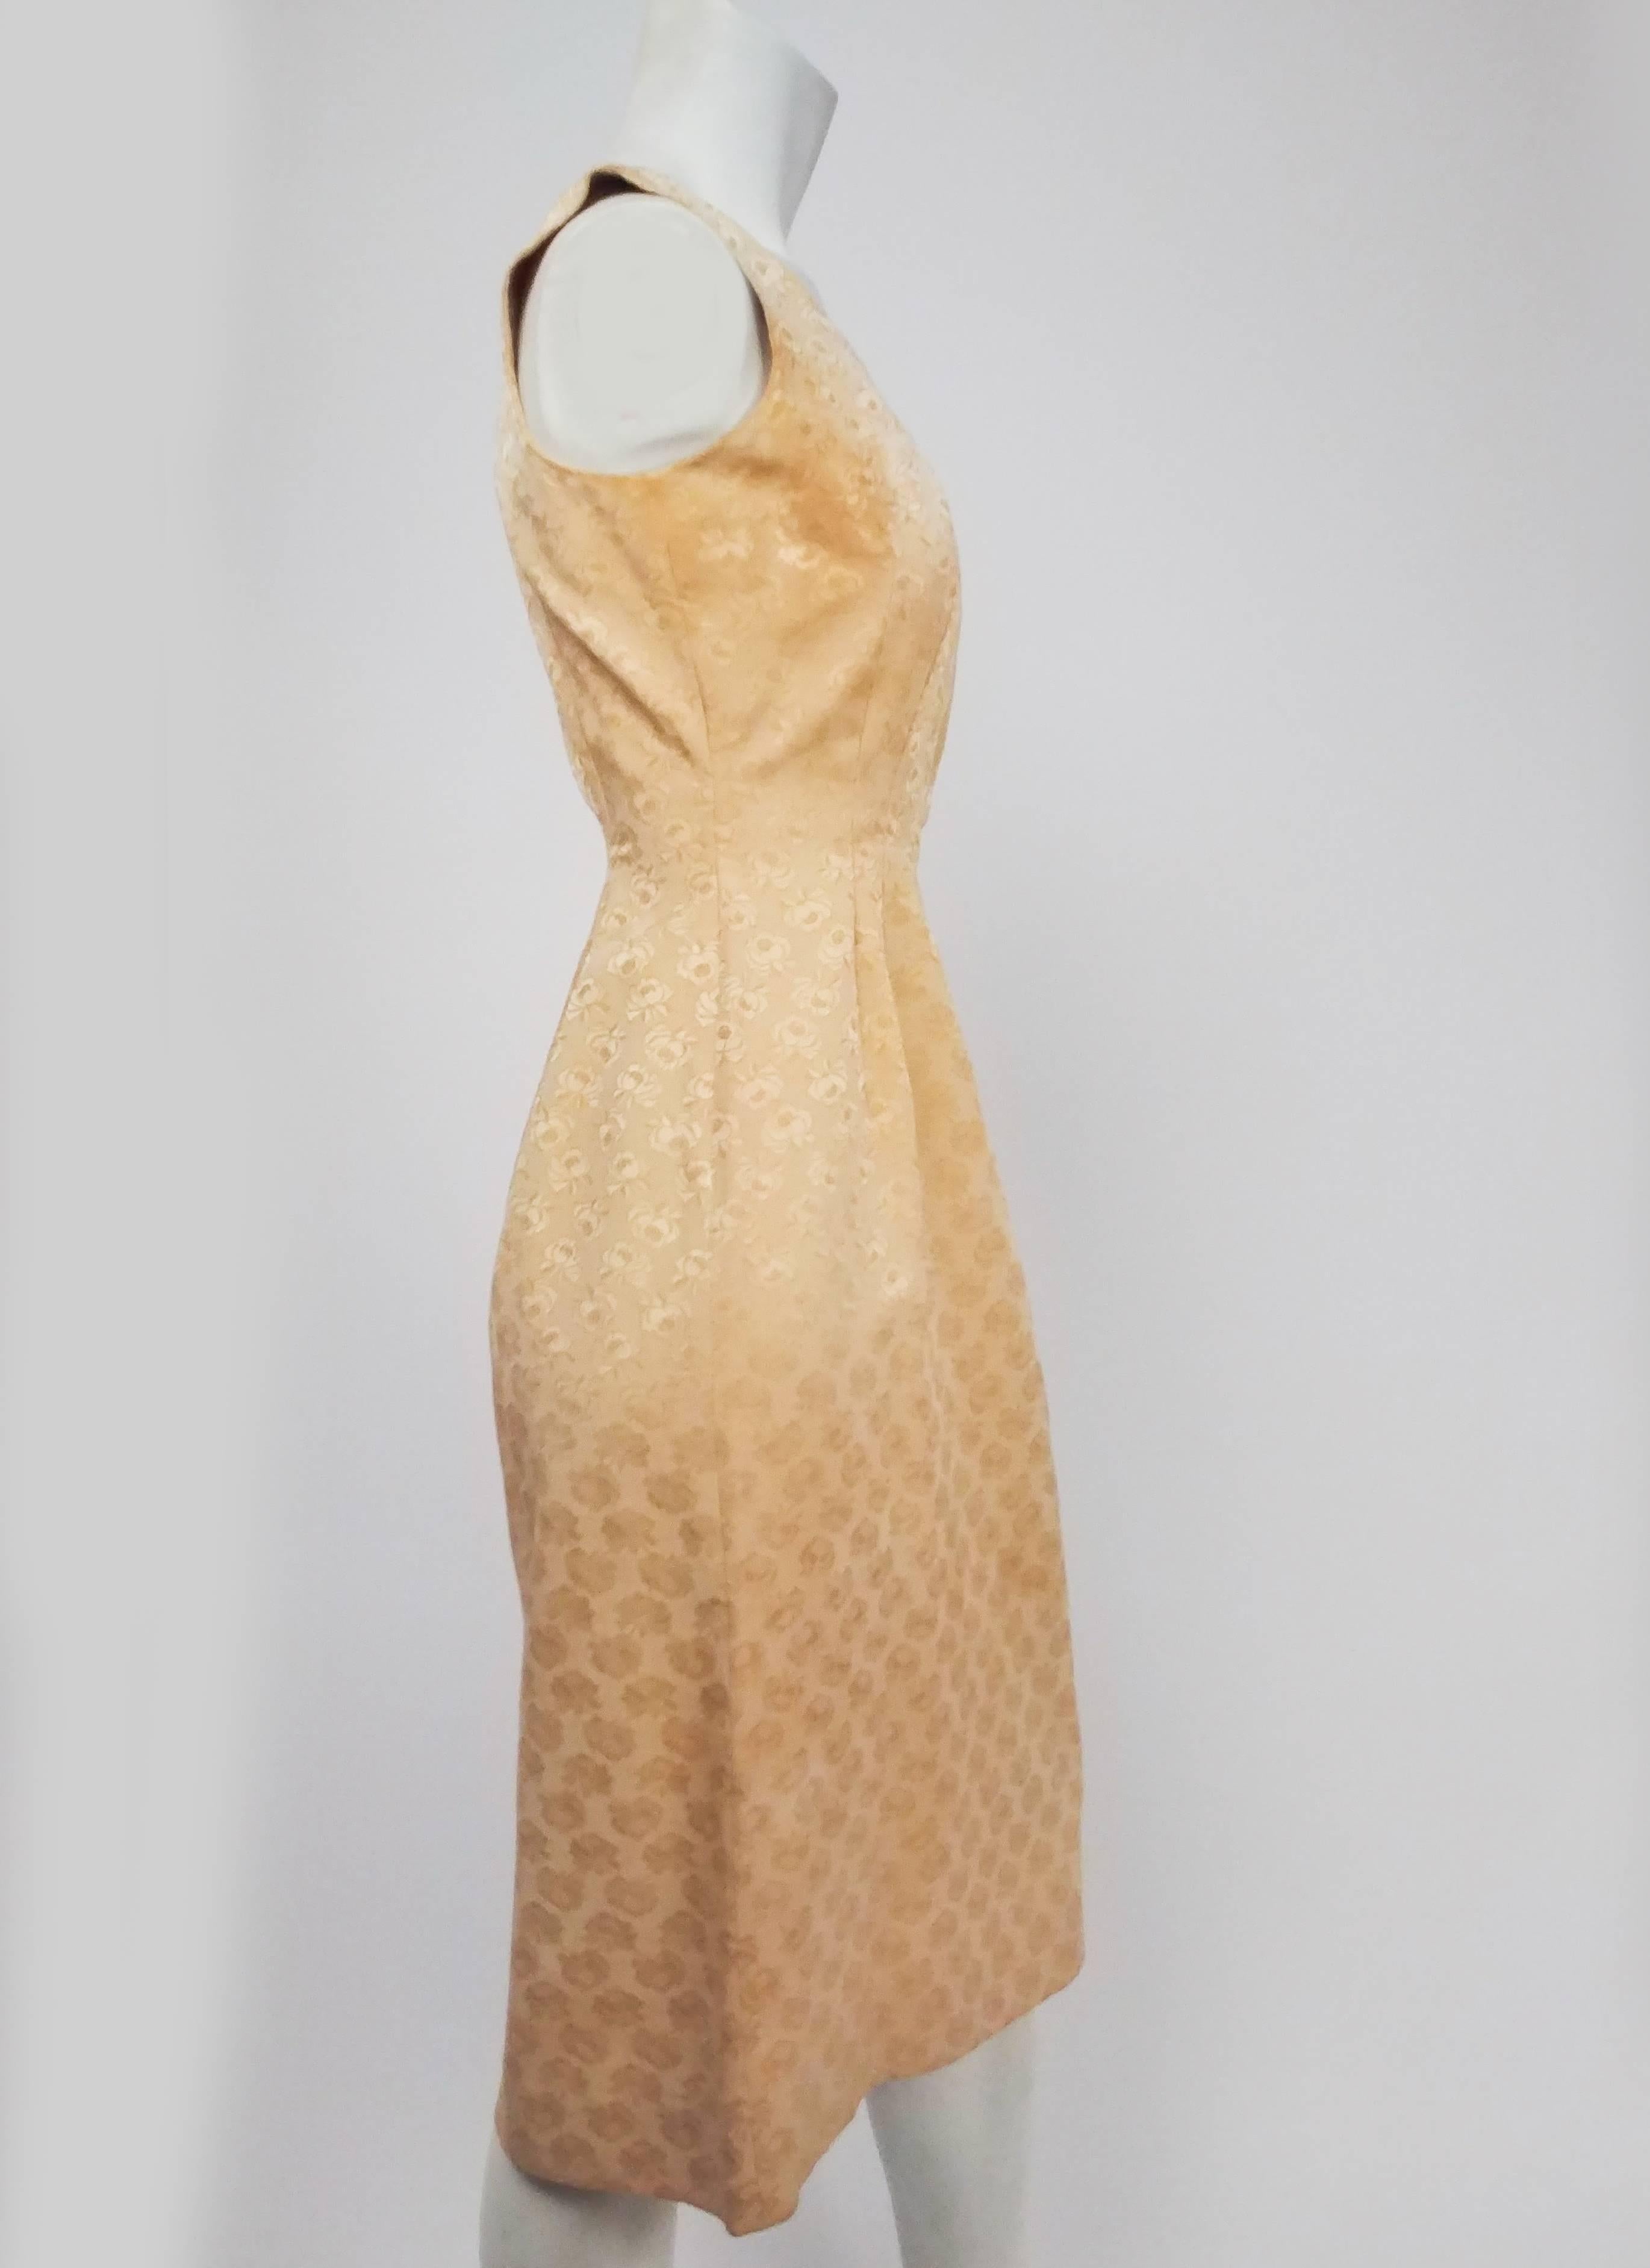 Lilli Ann Gelbes Rosen-Jacquard-Cocktailkleid, 1960er Jahre. Gelbes Etuikleid aus strukturiertem Jacquard mit Rosenmuster. Reißverschlüsse auf der Rückseite.